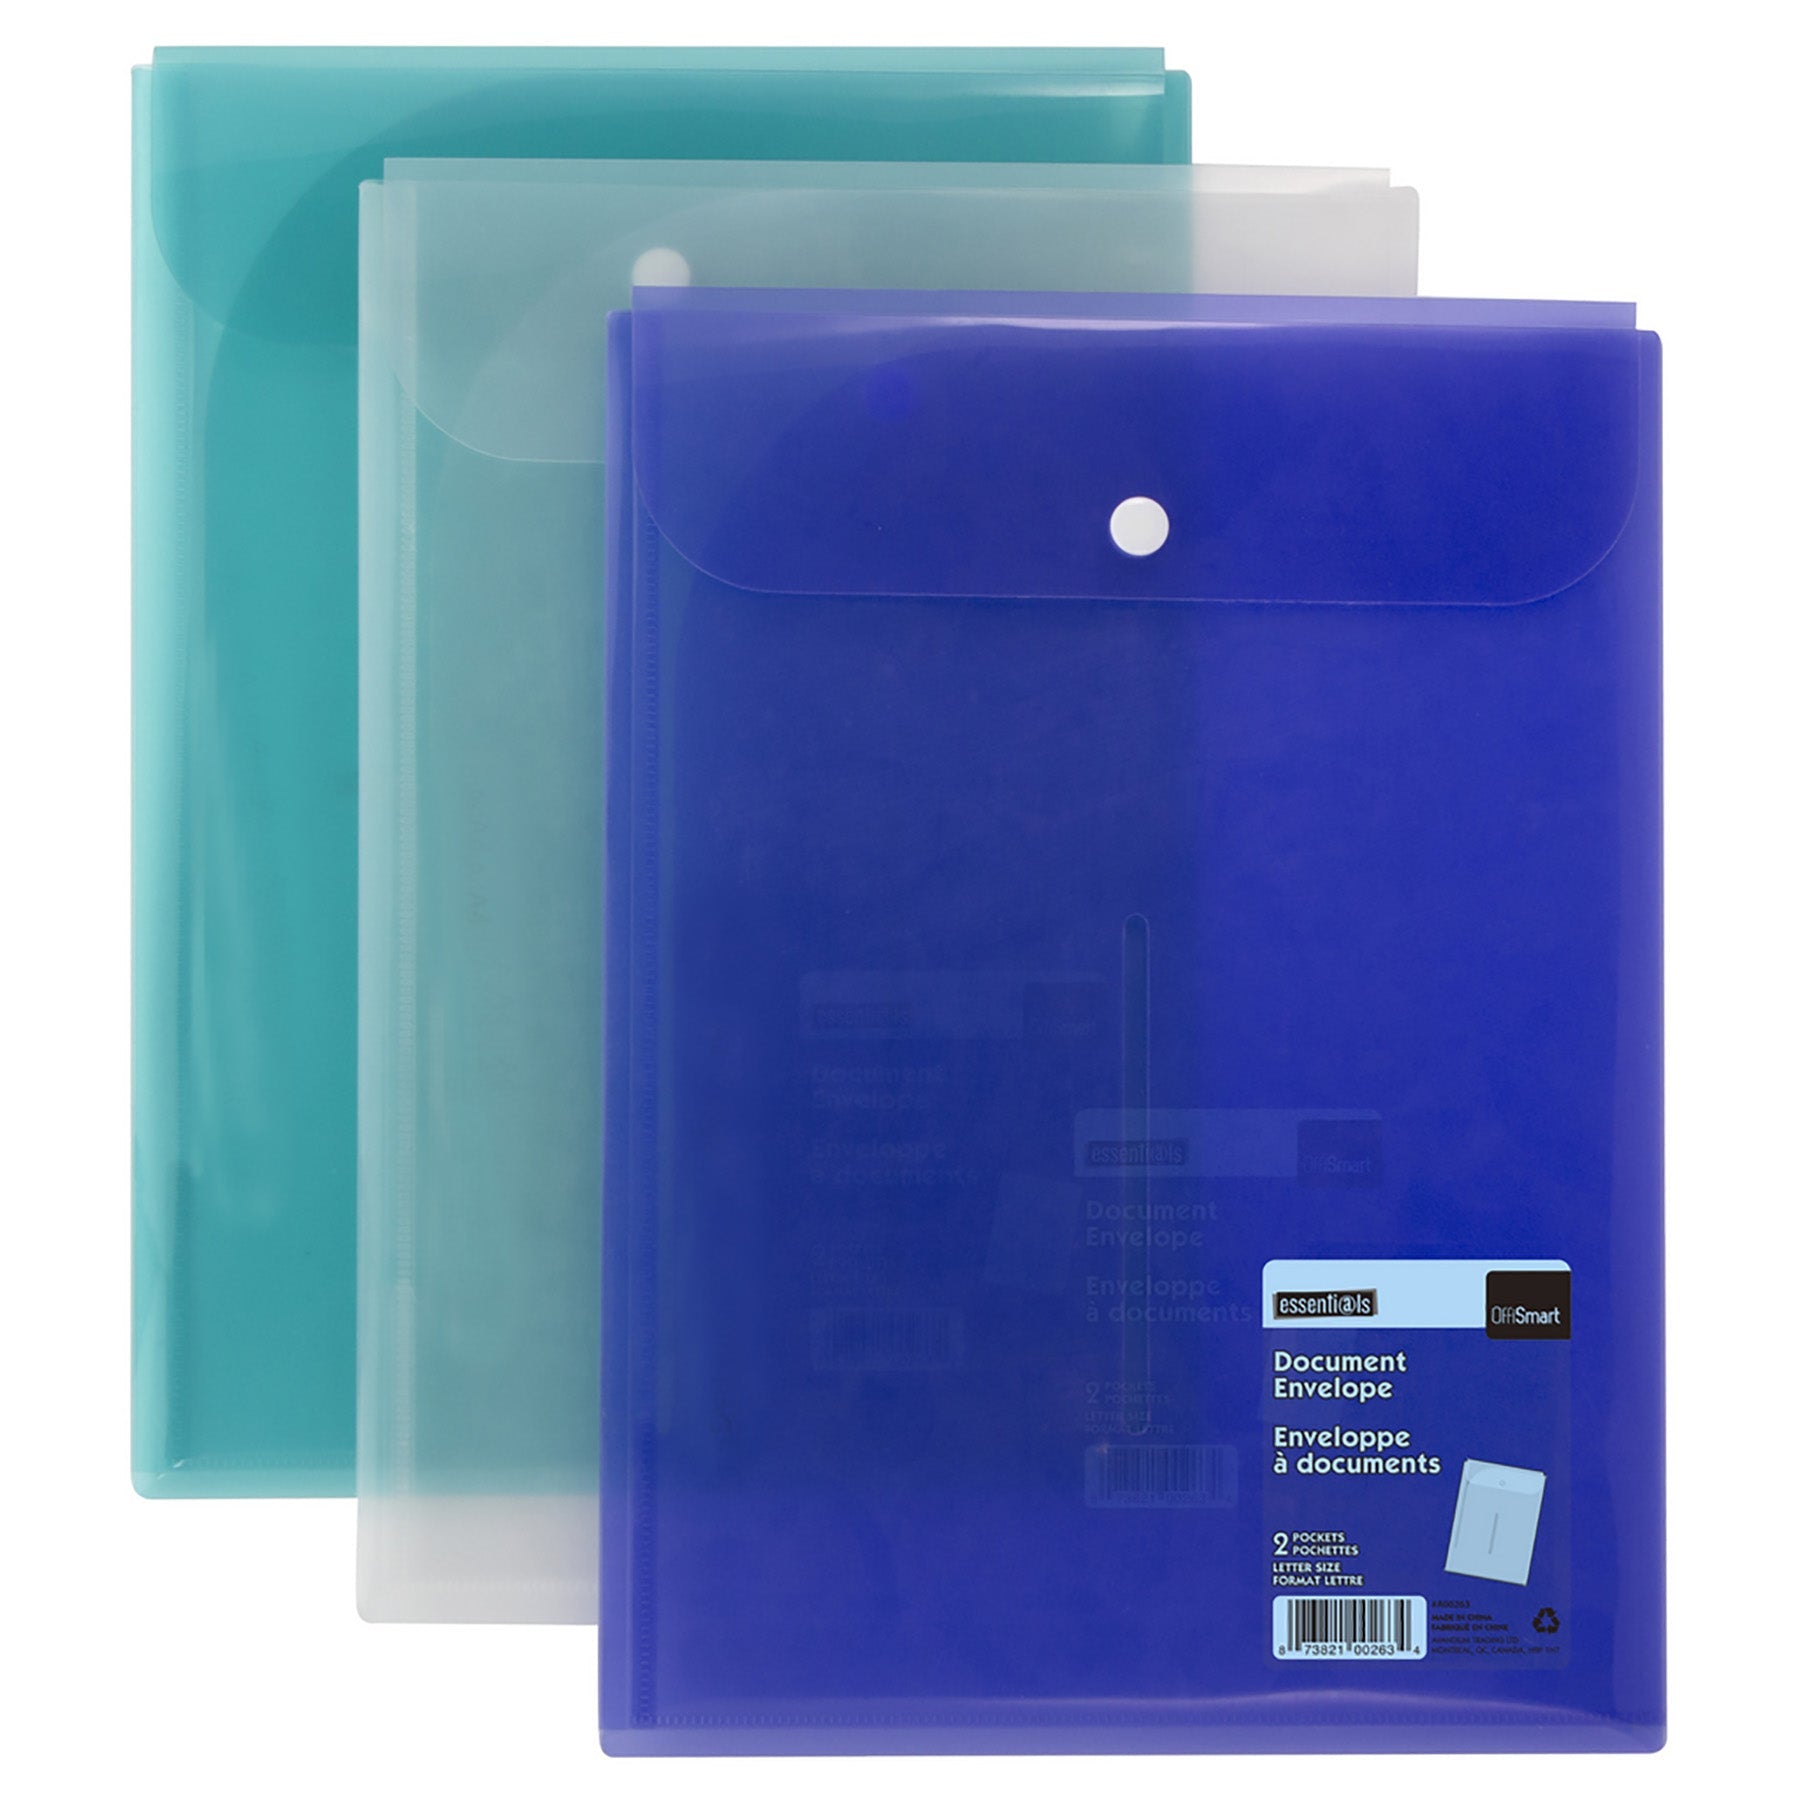 Offismart Envelope 2 Pockets Vertical Plastic 11.75x9in